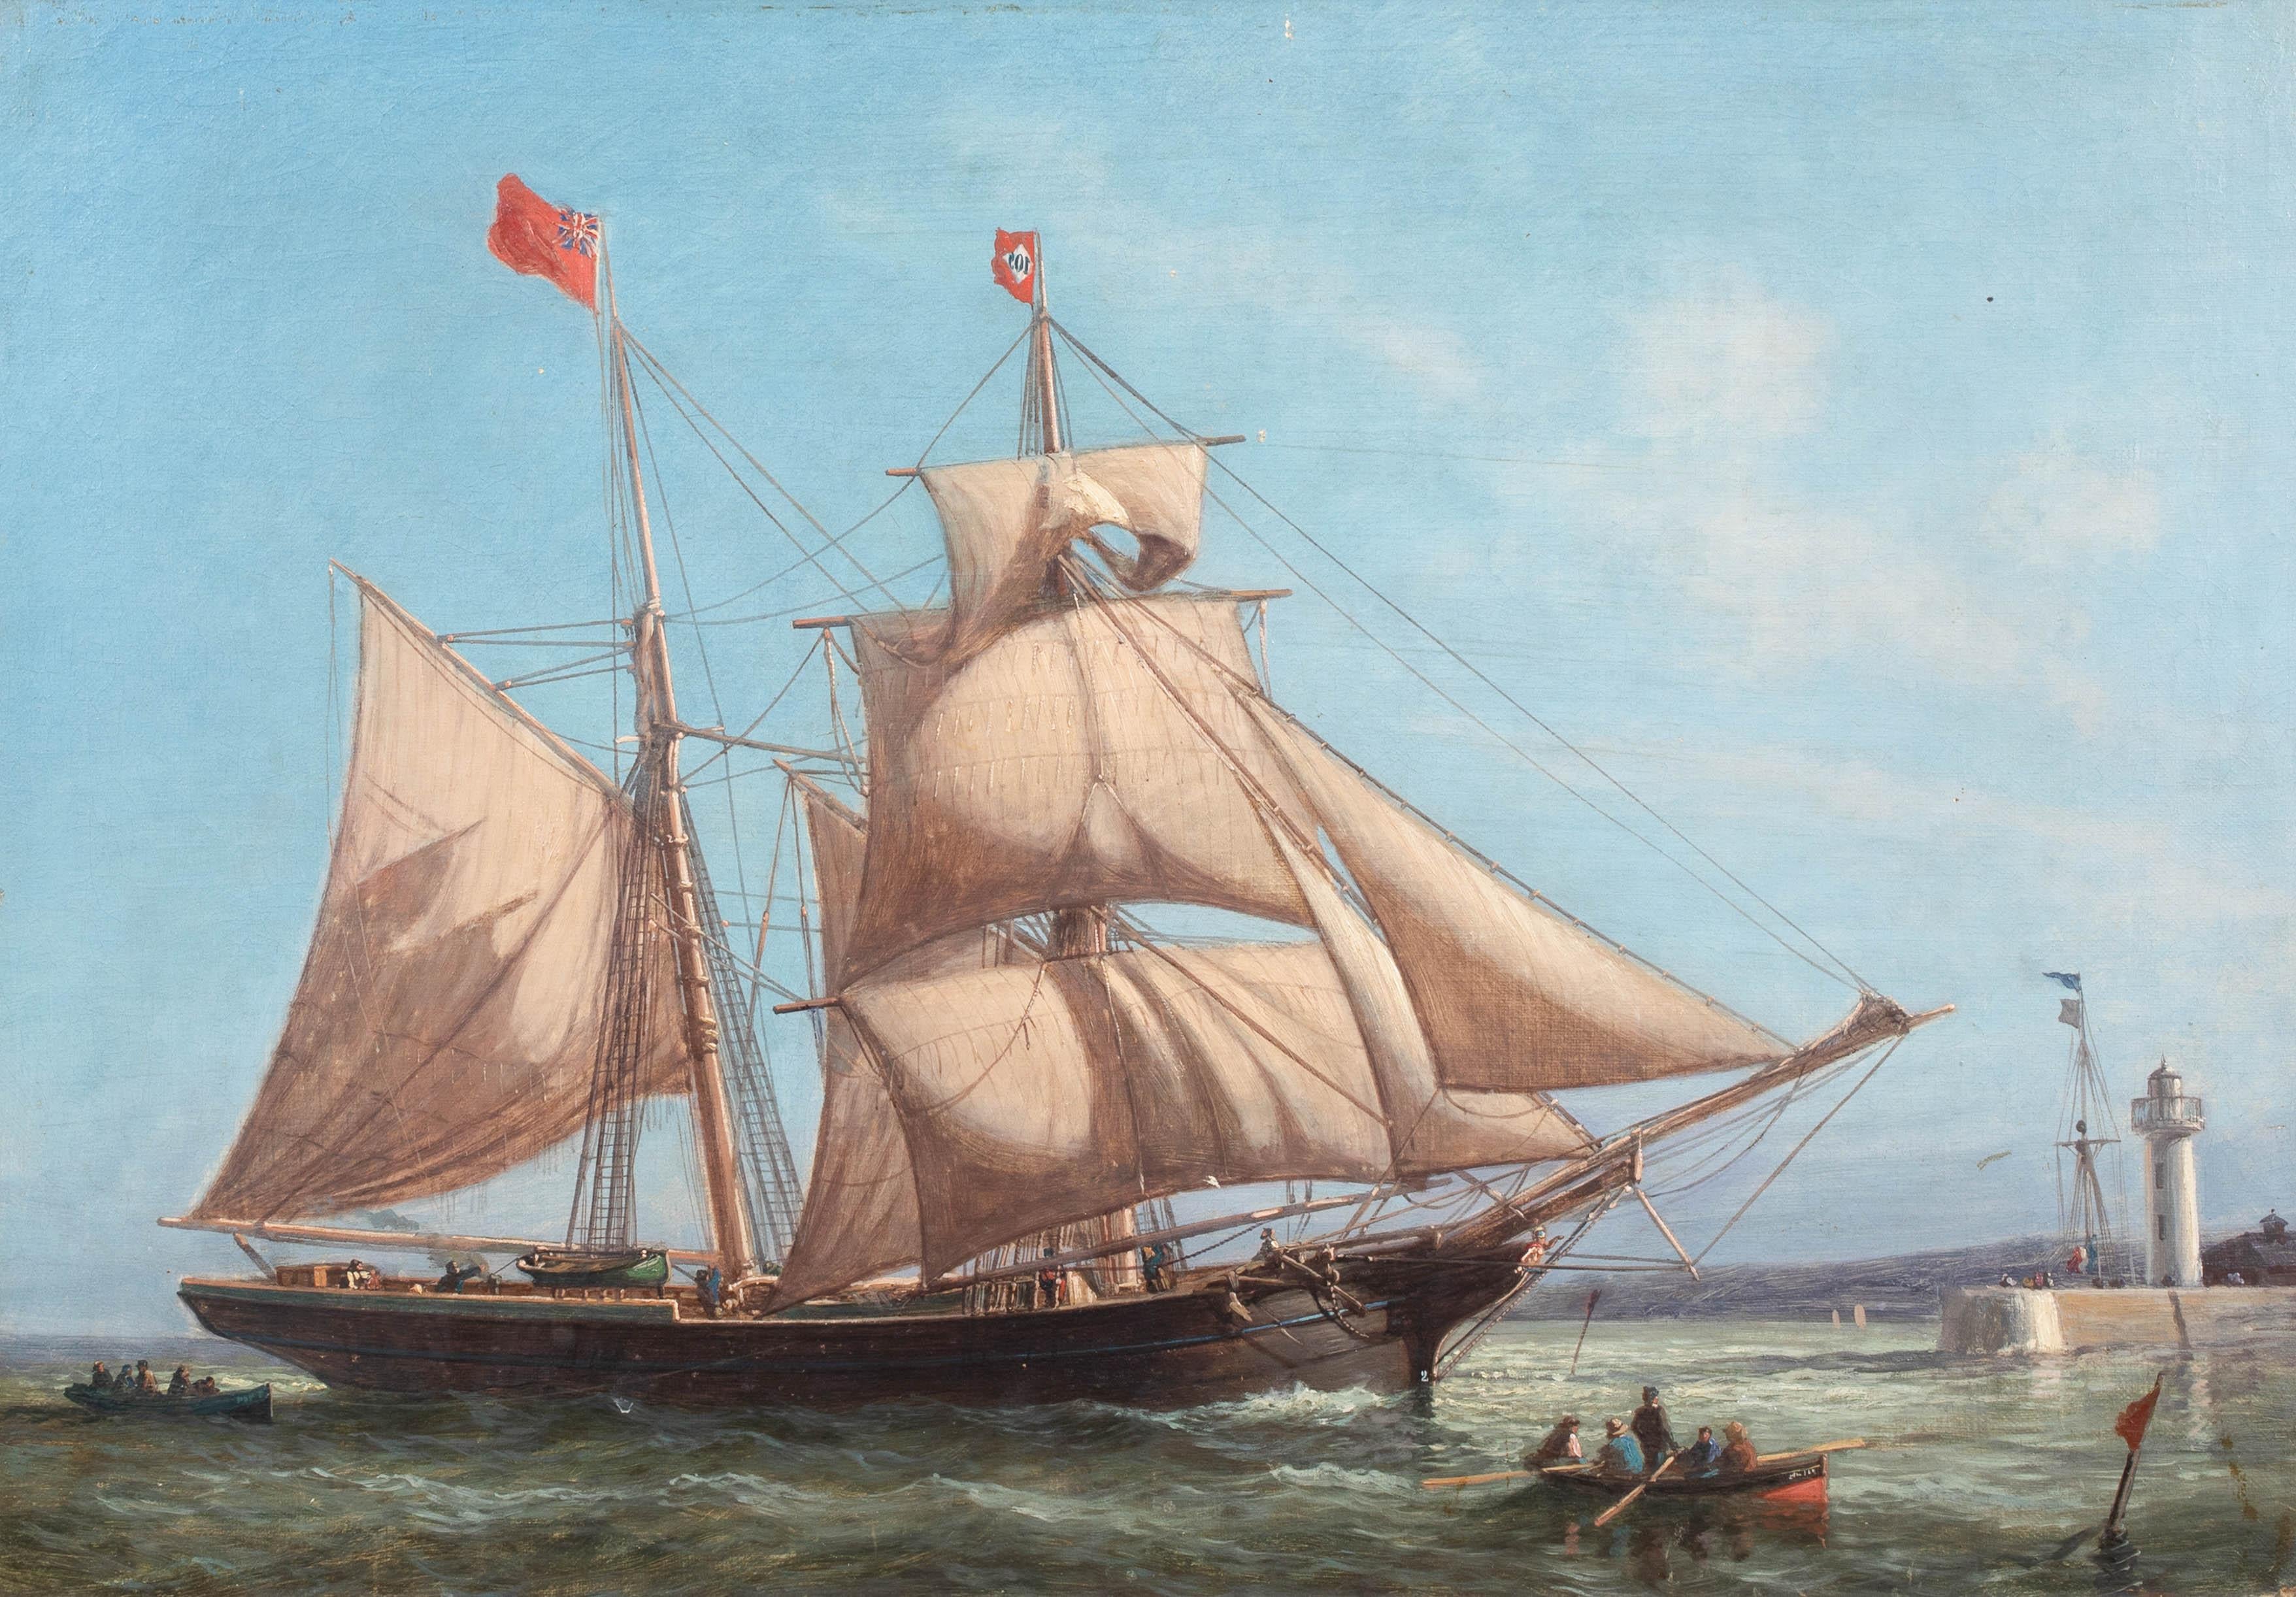 18th century schooner ship